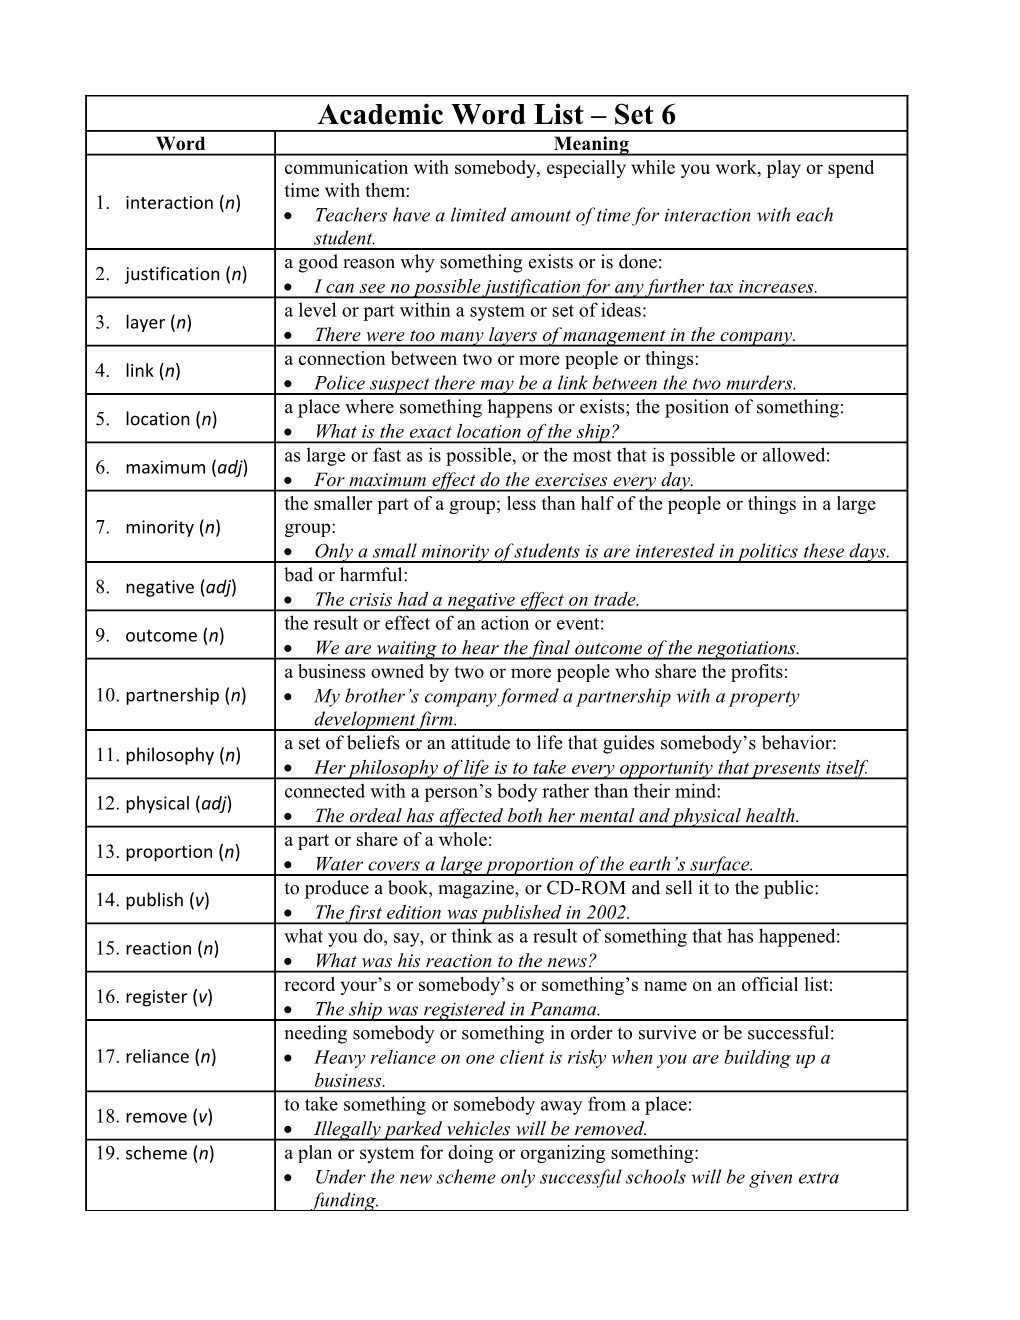 Academic Word List Set 6